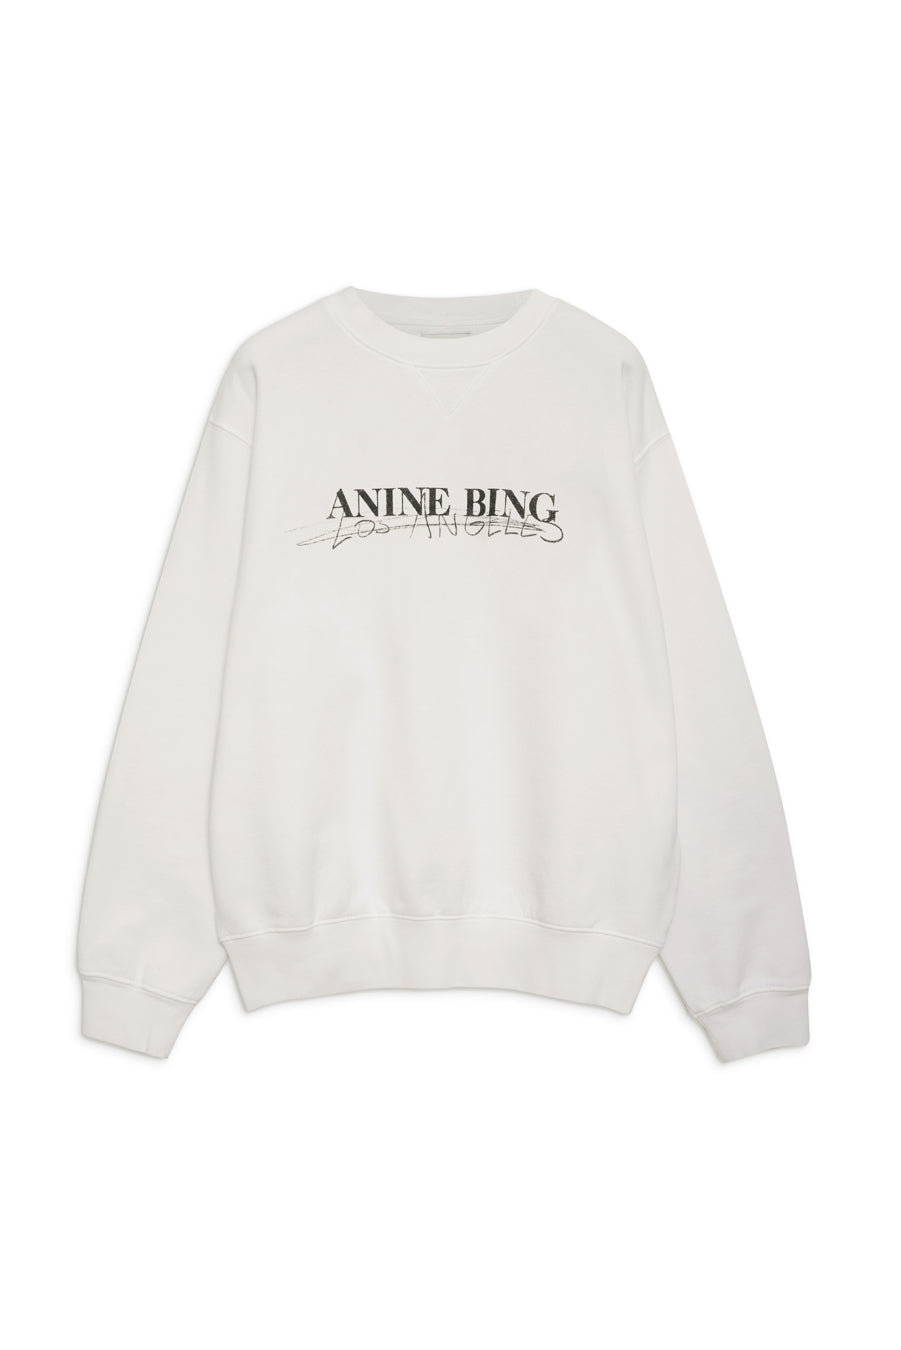 Anine Bing - Ramona Sweatshirt Doodle in Ivory